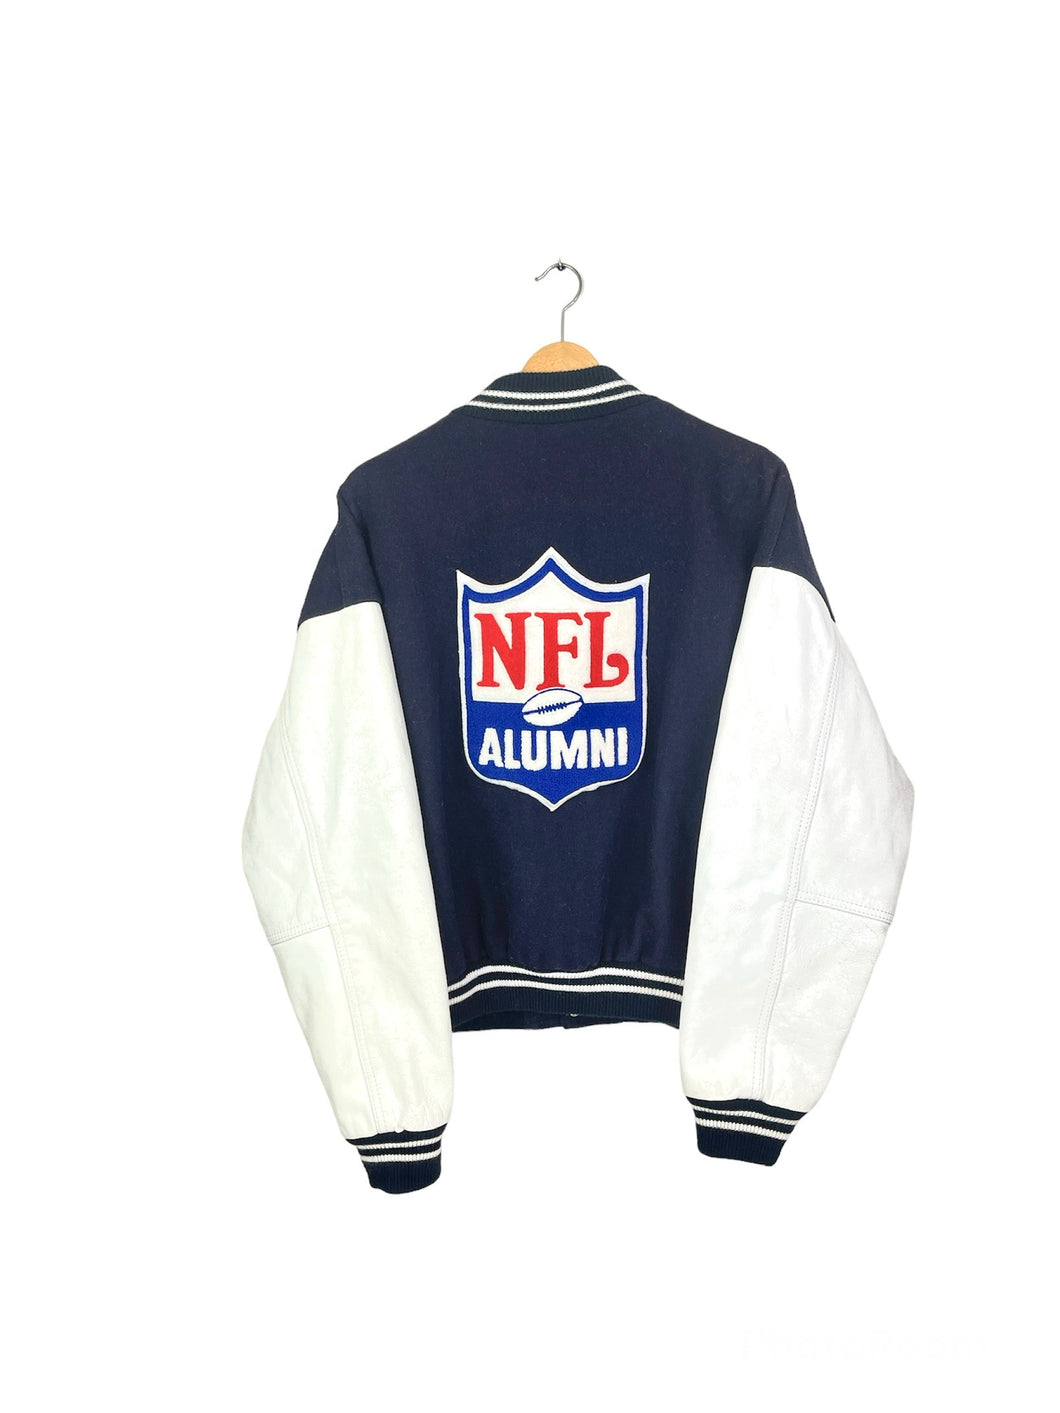 NFL Alumni Varsity Jacket - Large